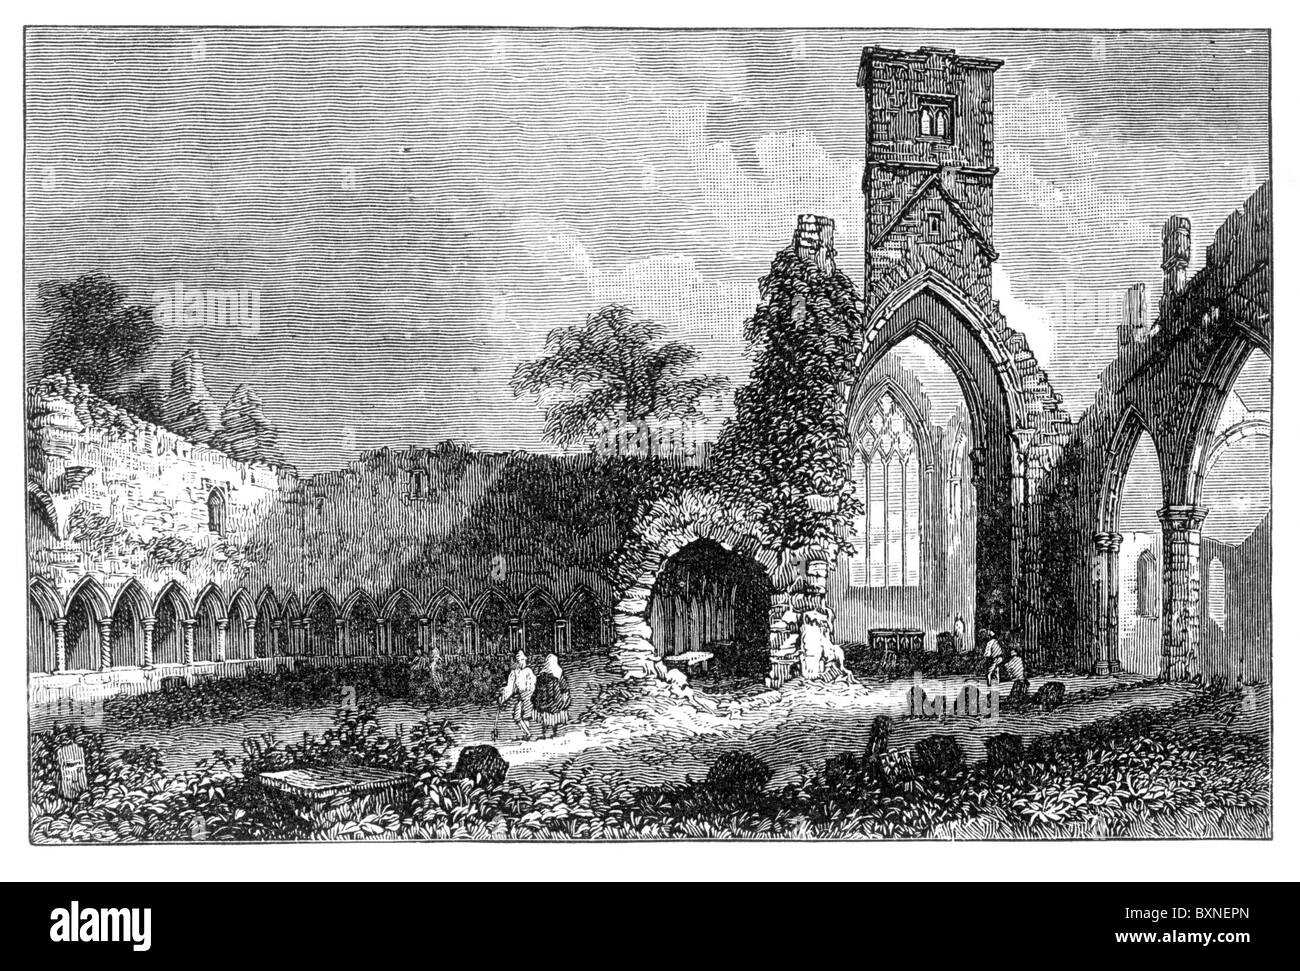 Dominikanisches Kloster Runis, Sligo, Irland nach einem Kupferstich von William Henry Bartlett; Schwarz und weiß-Abbildung; Stockfoto